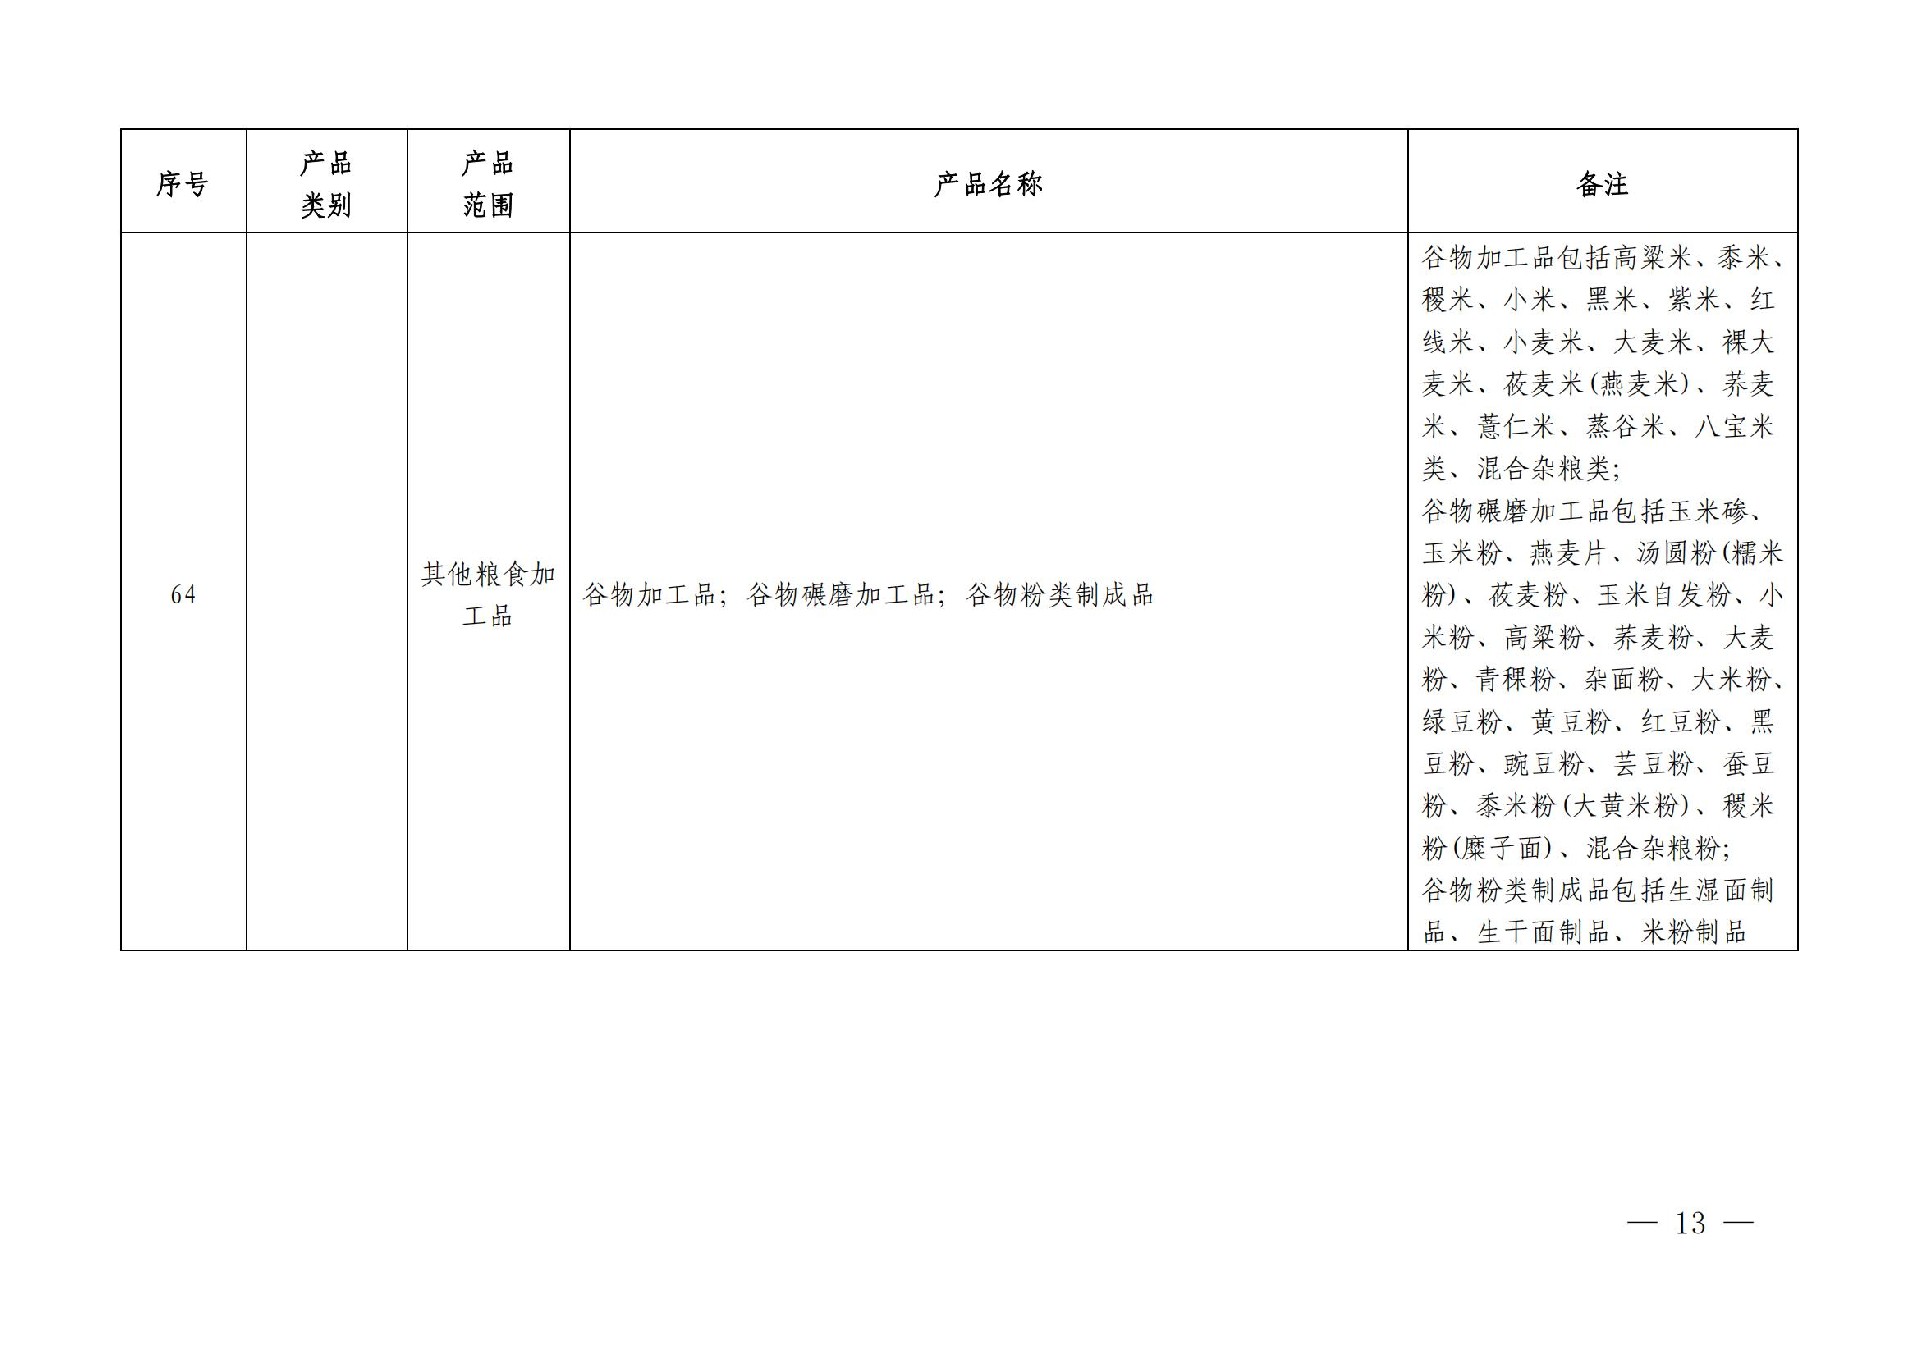 有机产品认证目录【认监委2019年第22号公告】(1)_12.jpg